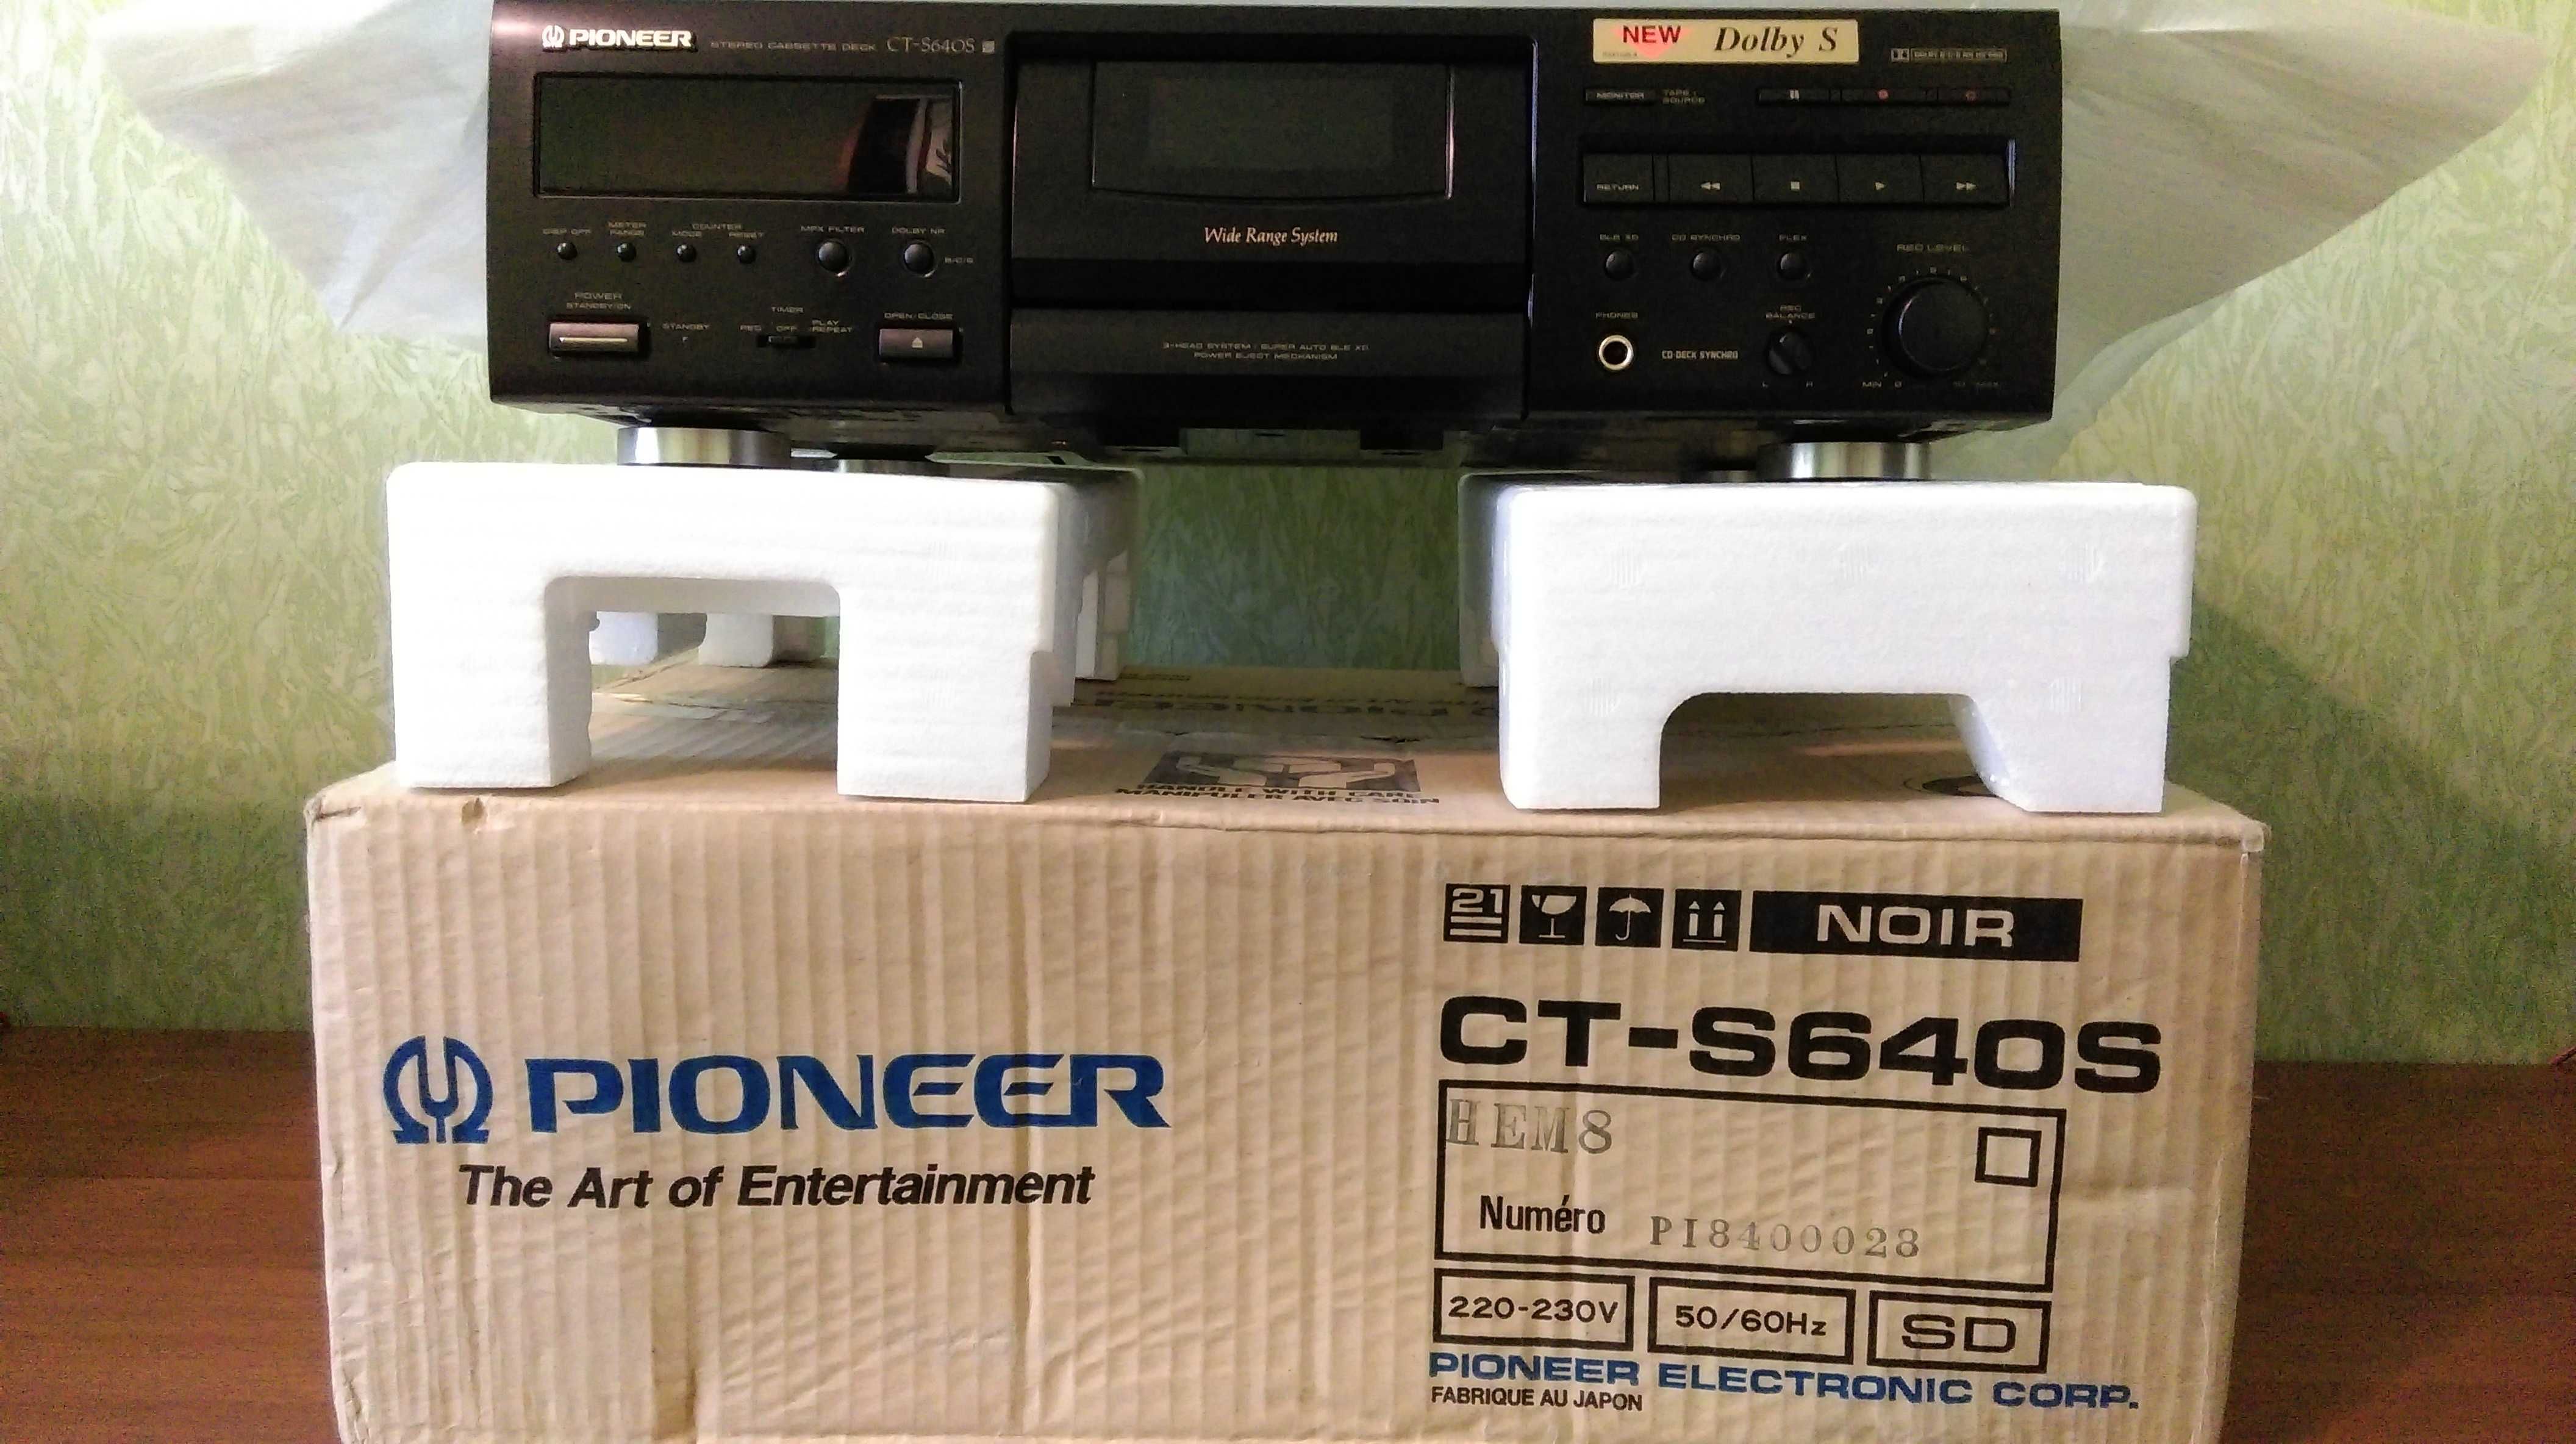 Кассетная дека Pioneer CT- S640S -1995 год (Japan) (новая в упаковке).